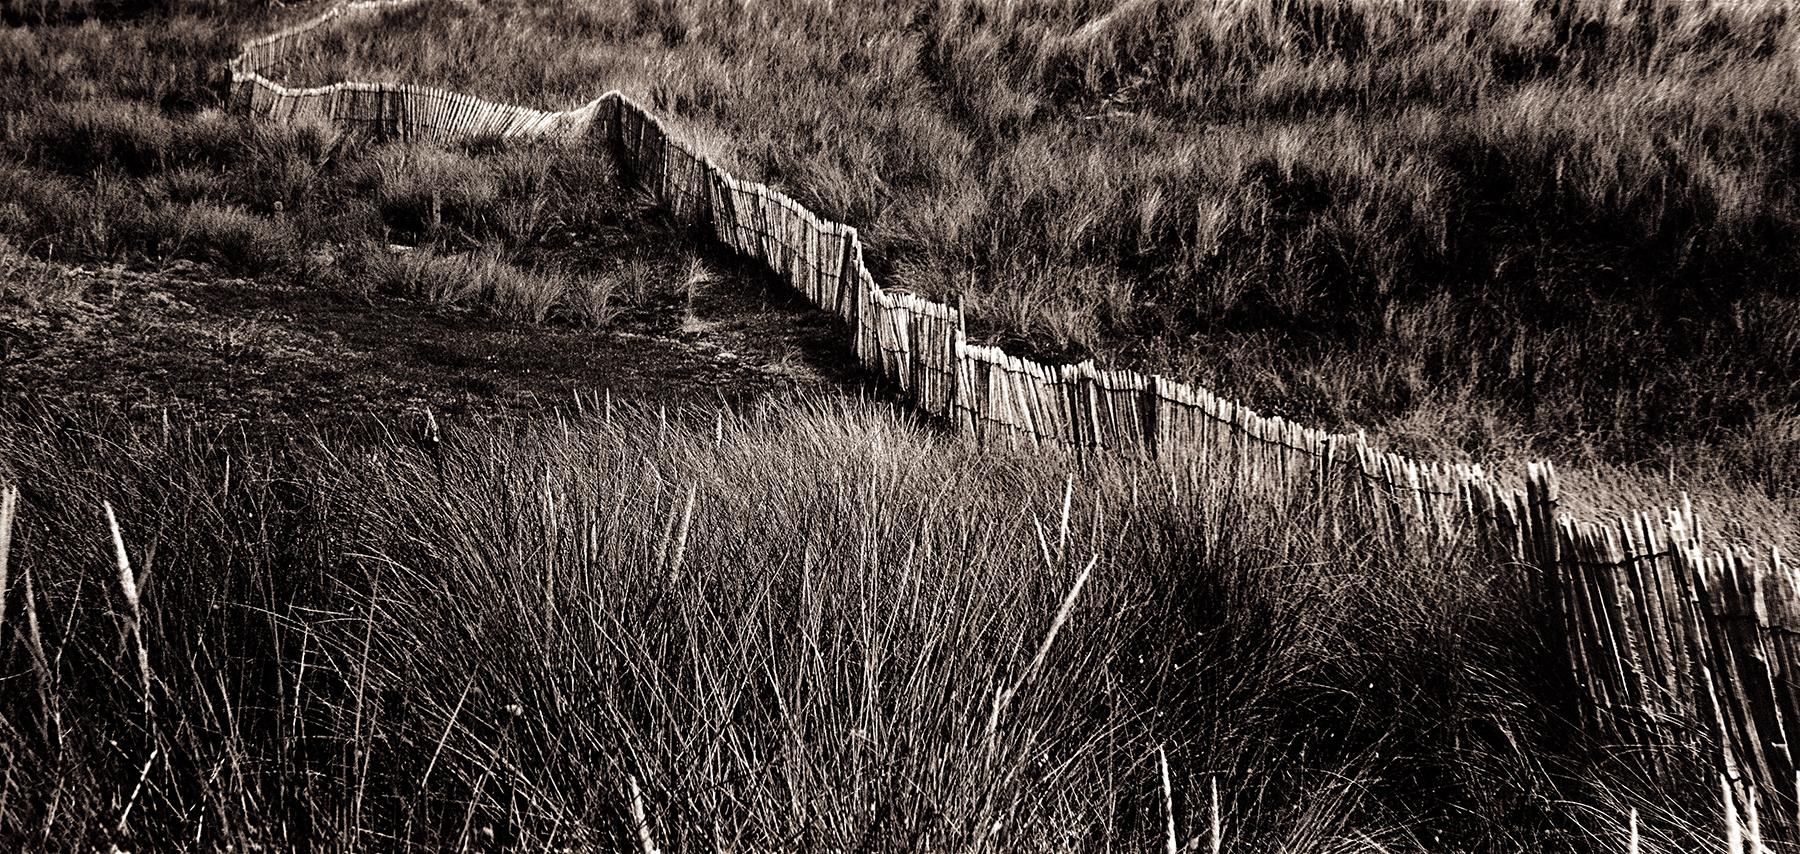 Ian Sanderson Landscape Photograph – Dune - Signierter Kunstdruck in limitierter Auflage, schwarz weiß sepia, Landschaft braun